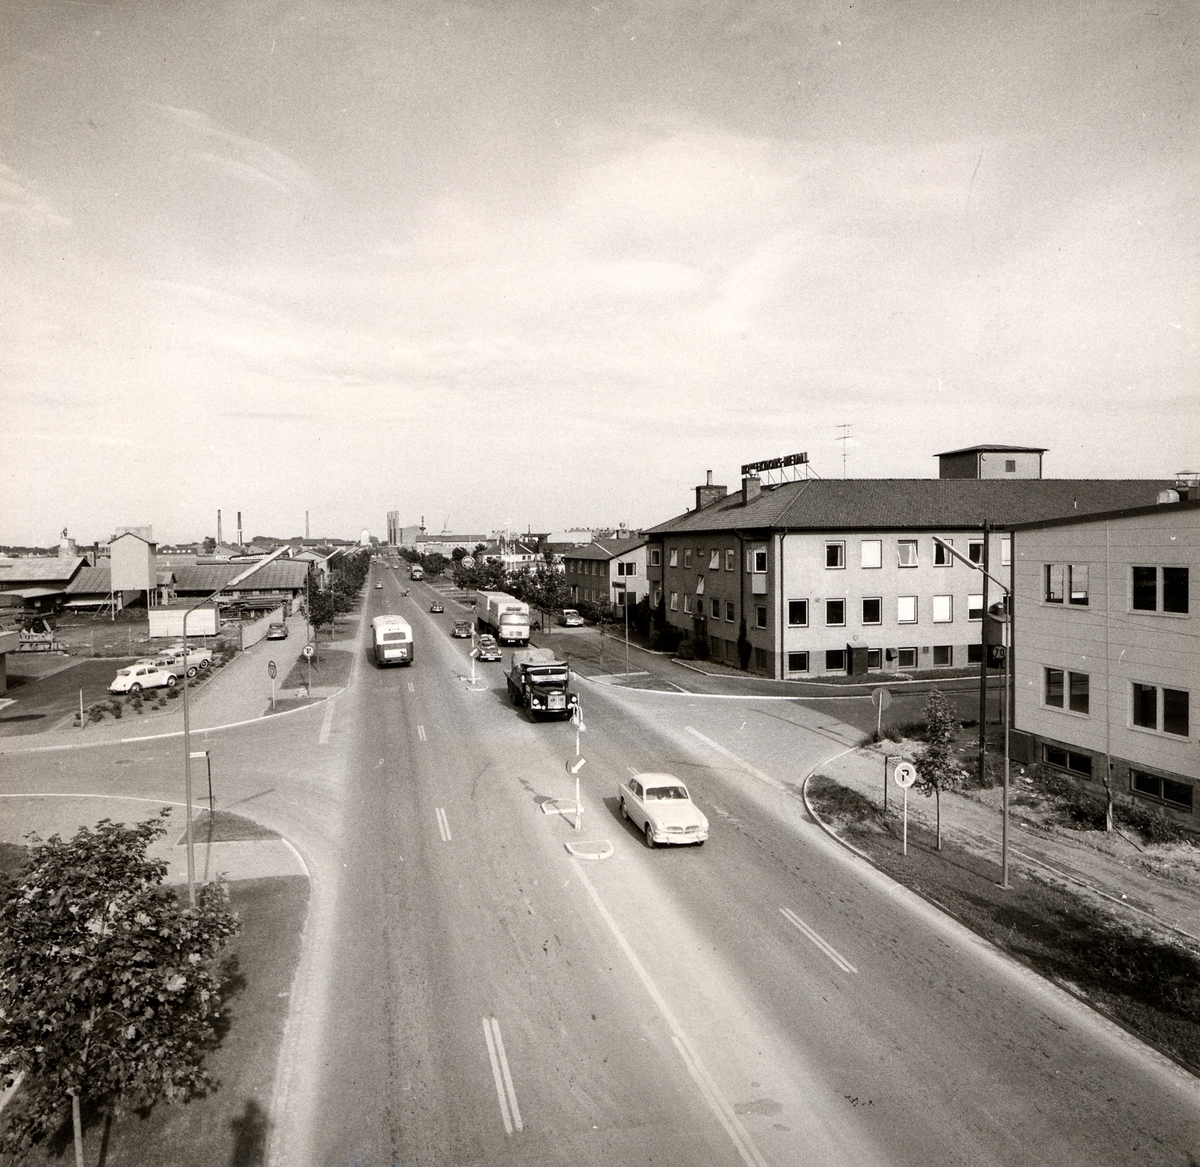 Orig. text: Industrigatan 1967. Vänstertrafik.
Stora byggnaden på höger sida är Konfektions-Metall. Vid korsningen Industrigatan/Mellangatan.